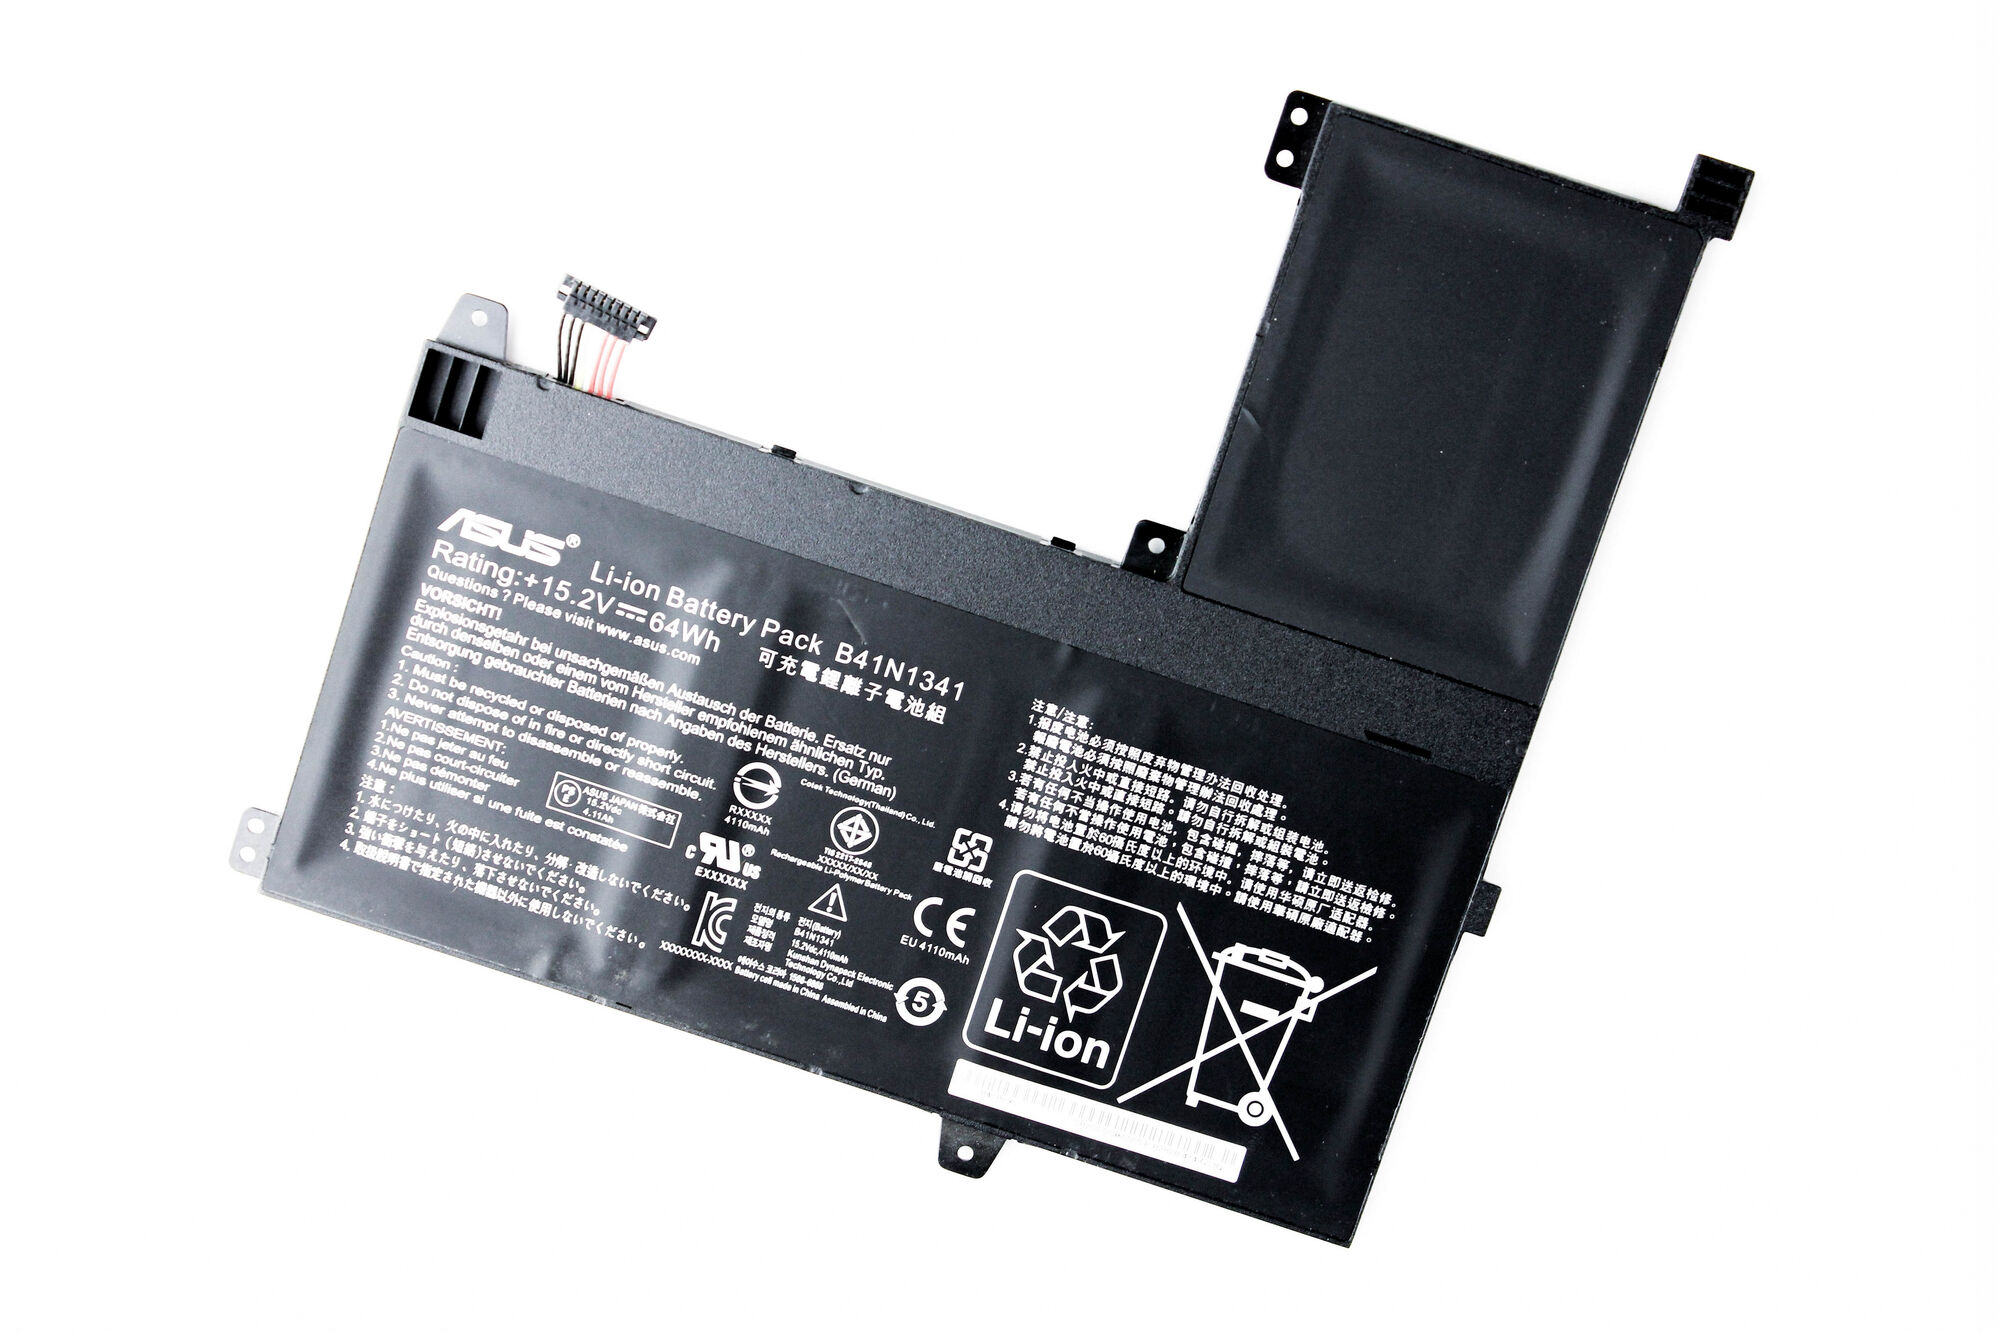 Аккумулятор для Asus Q502L Q502LA ORG (15.2V 4200mAh) p/n: B41N1341